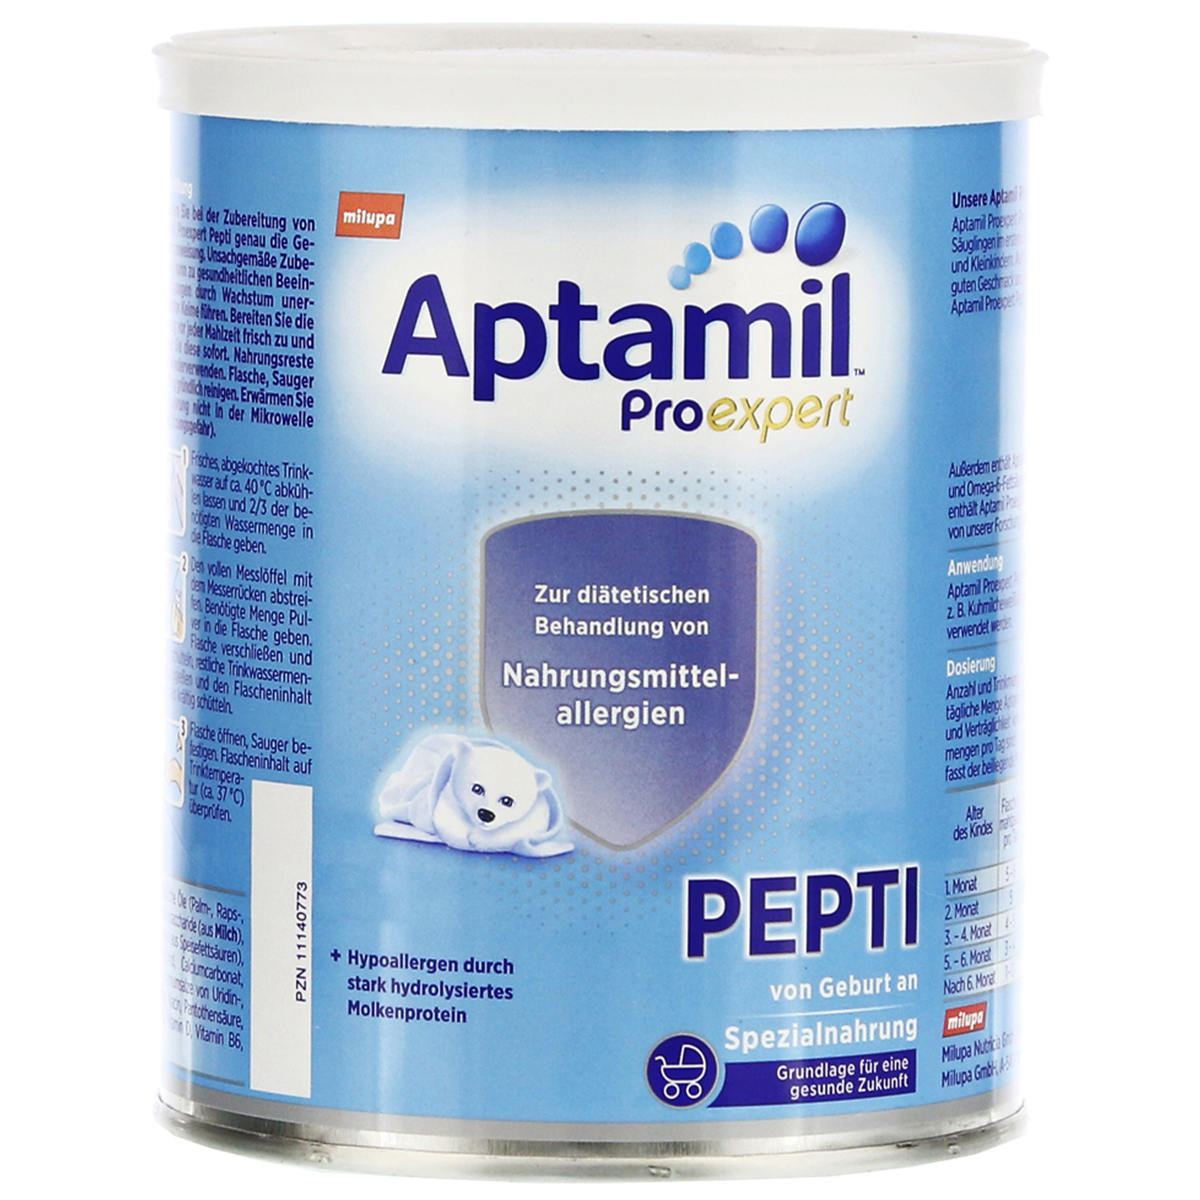 原装进口德国Aptamil爱他美pepti深度水解特殊配方奶粉蛋白质牛奶过敏低乳糖奶粉